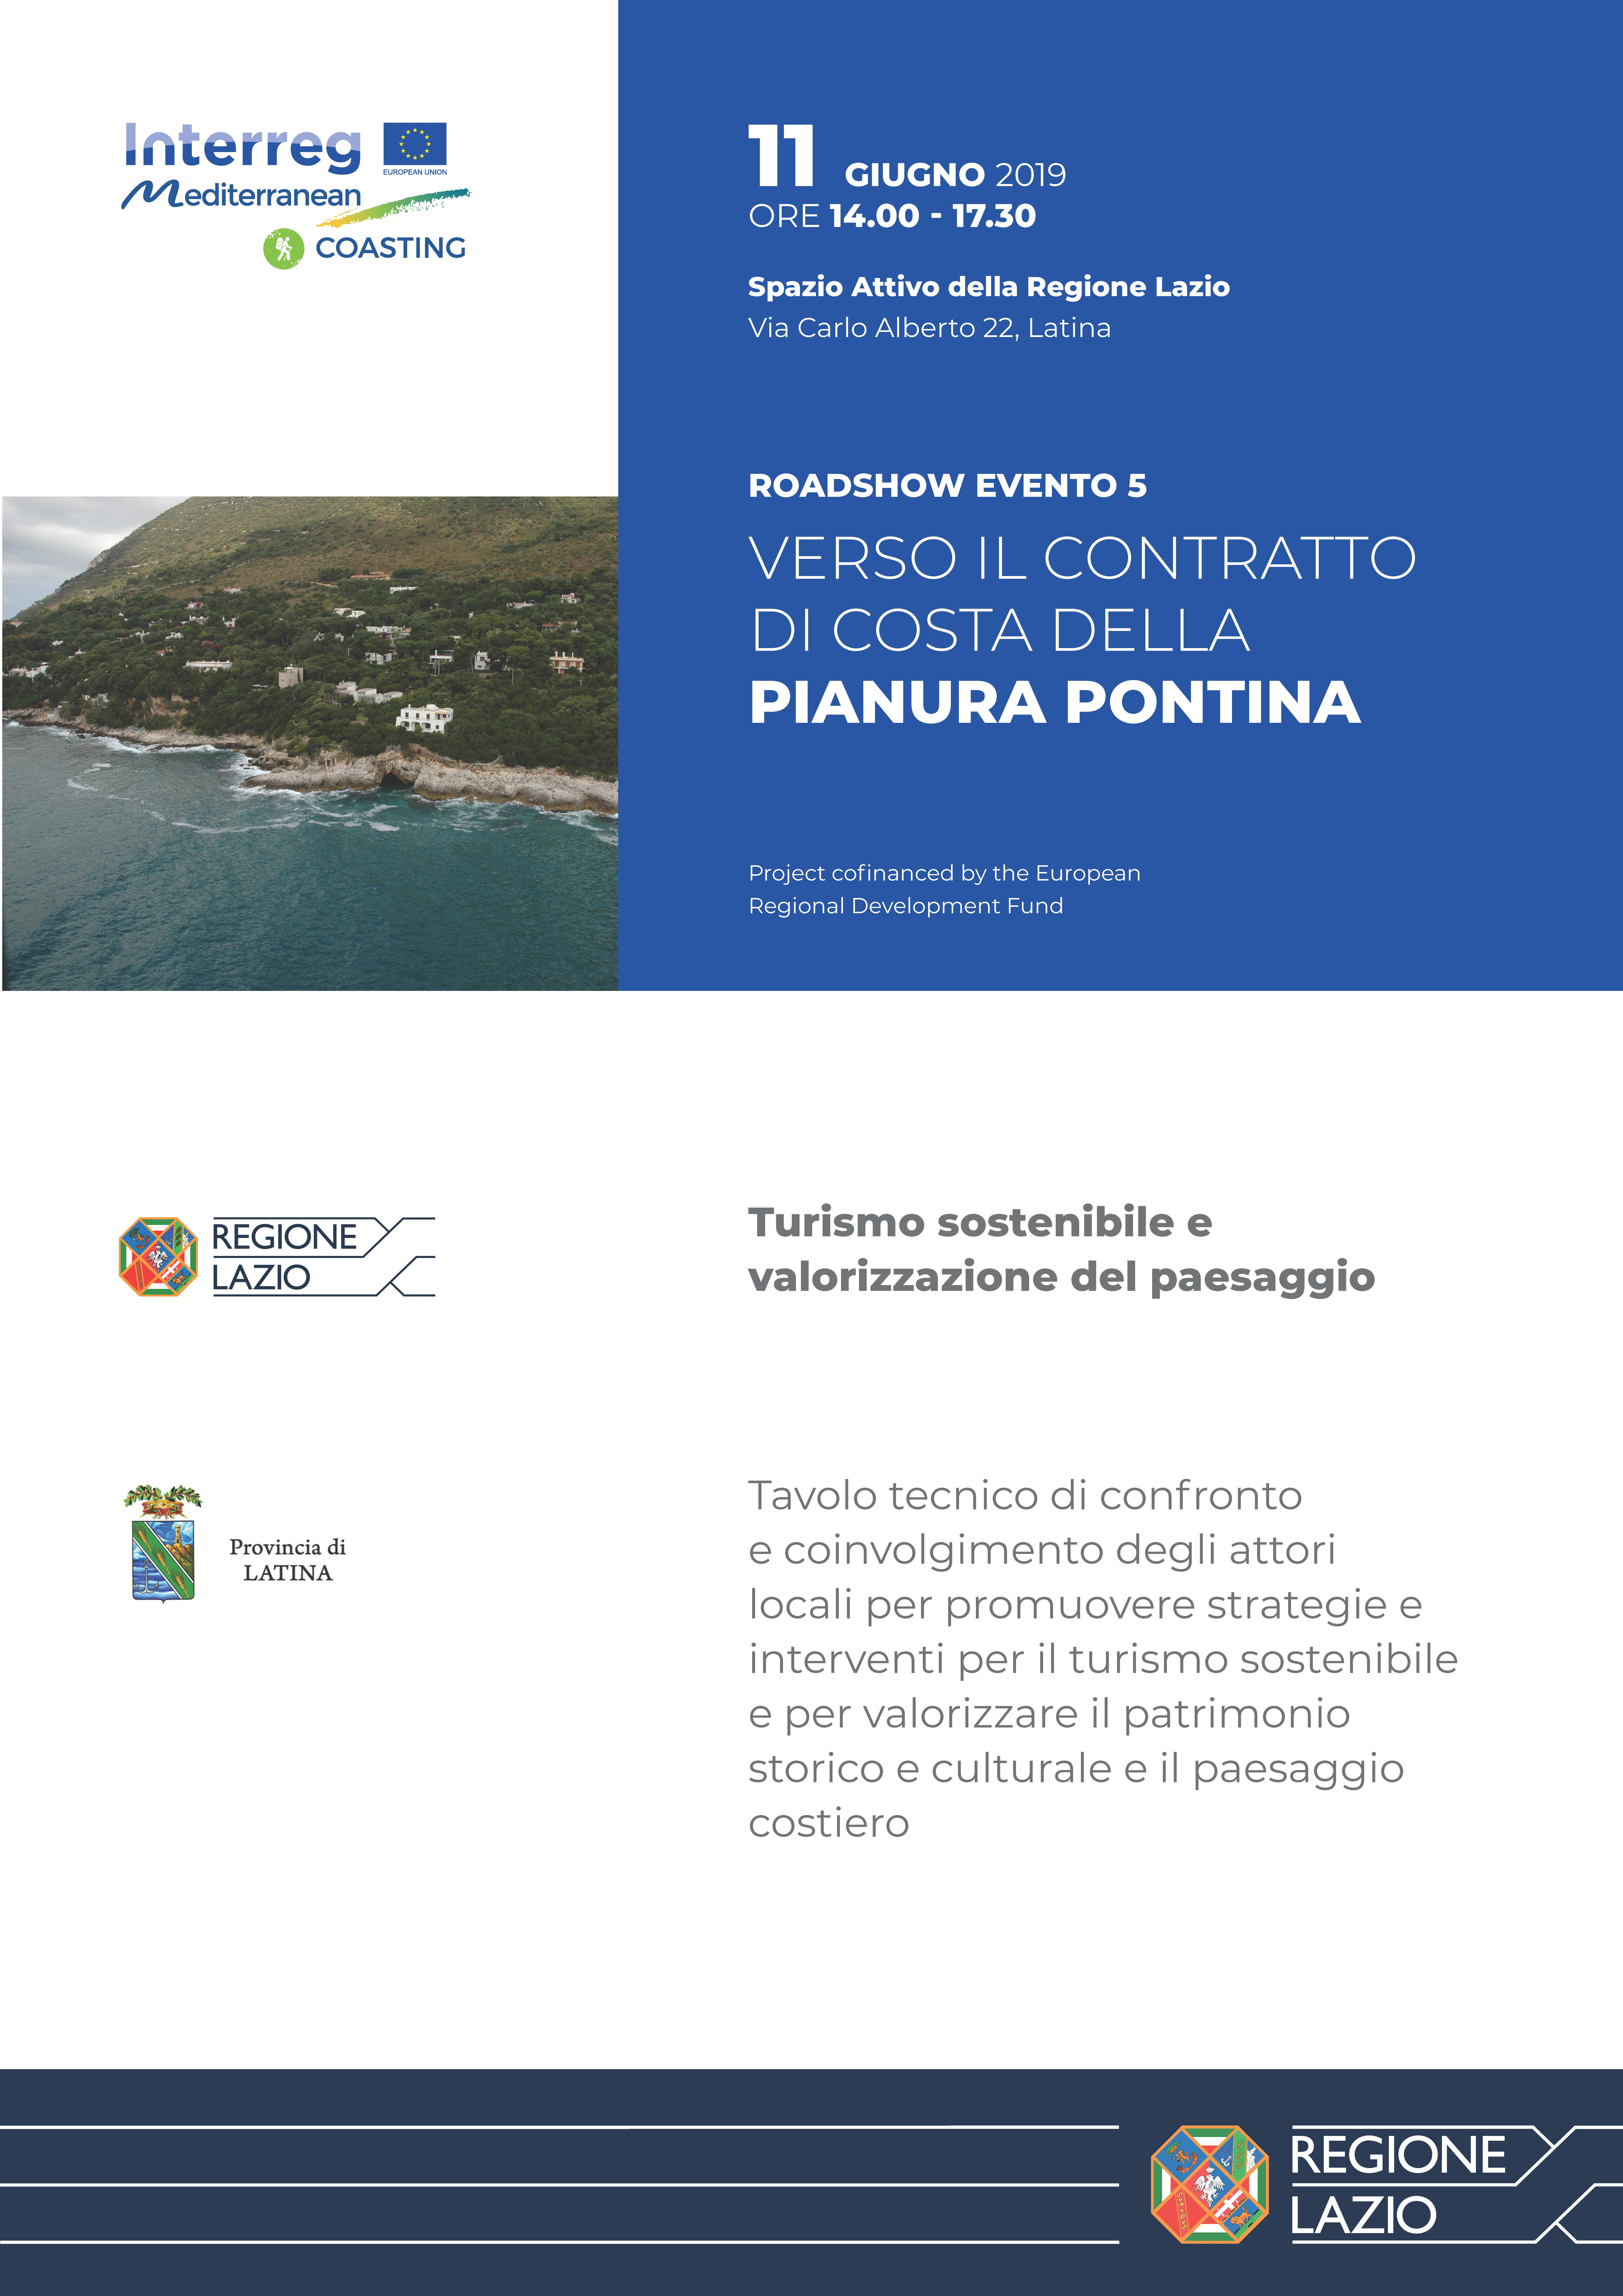 Coasting-Invito-3-Tavolo-Tecnico-Turismo-sostenibile